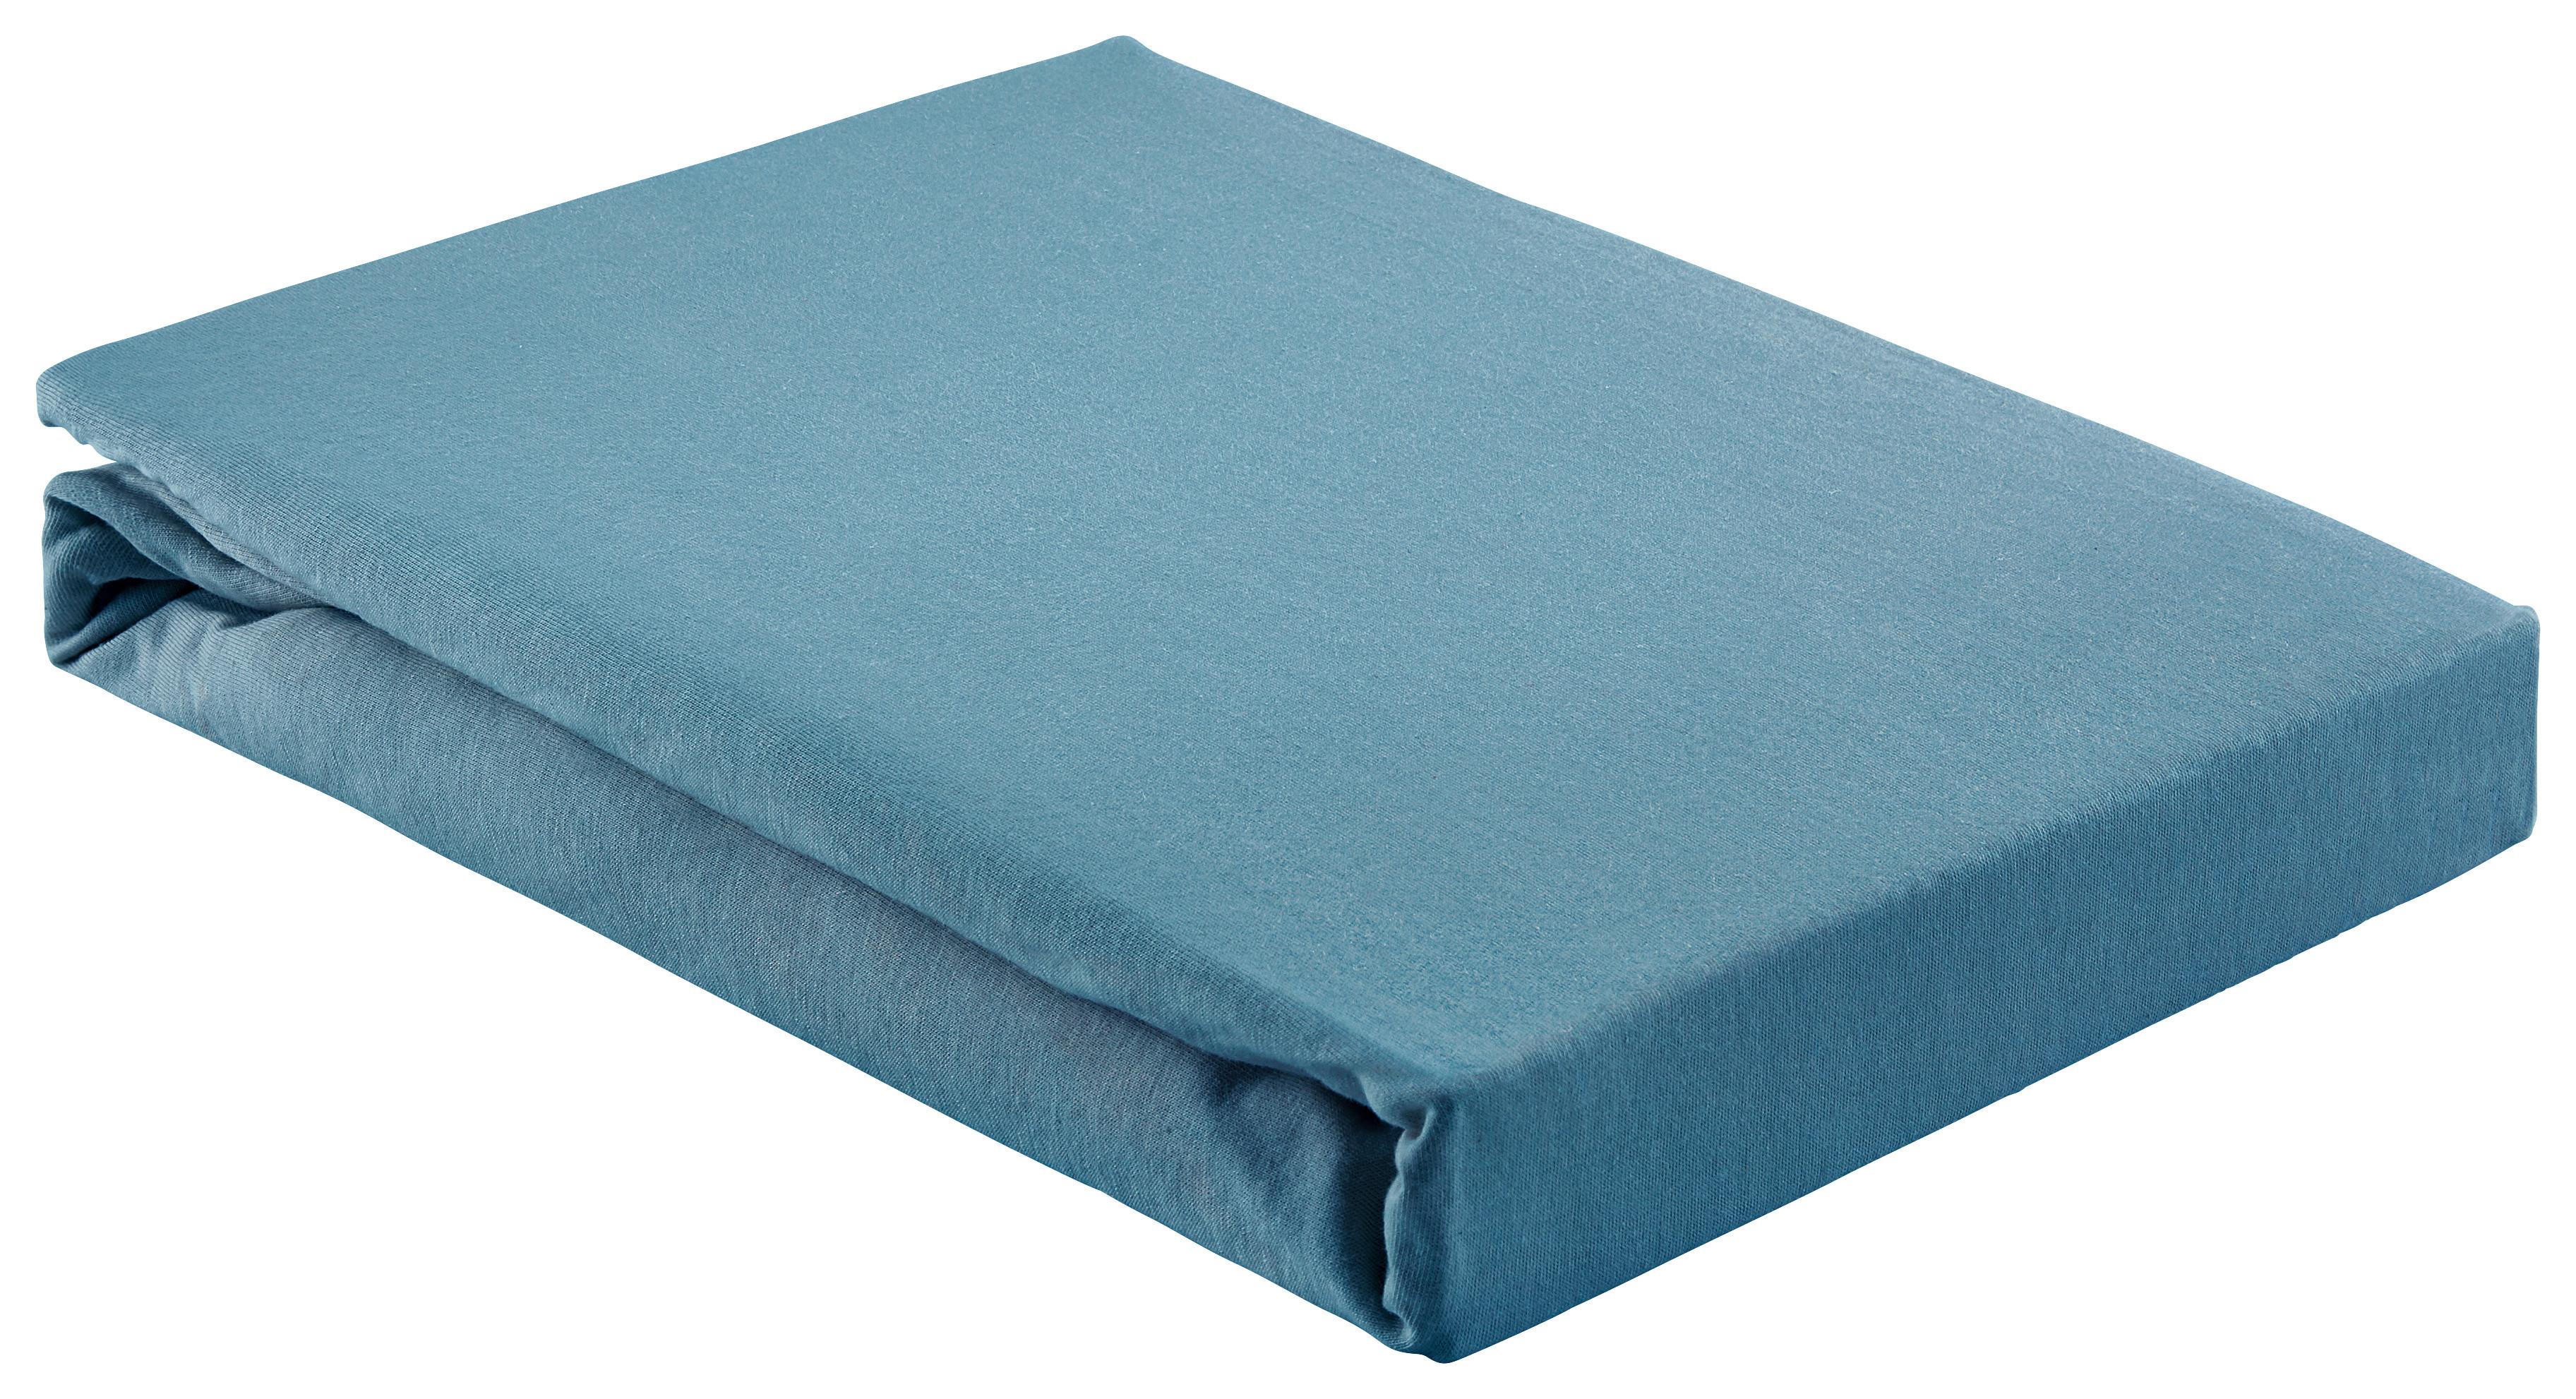 Napínacia Plachta Basic, 180/200cm, Modrá - modrá, textil (180/200cm) - Modern Living